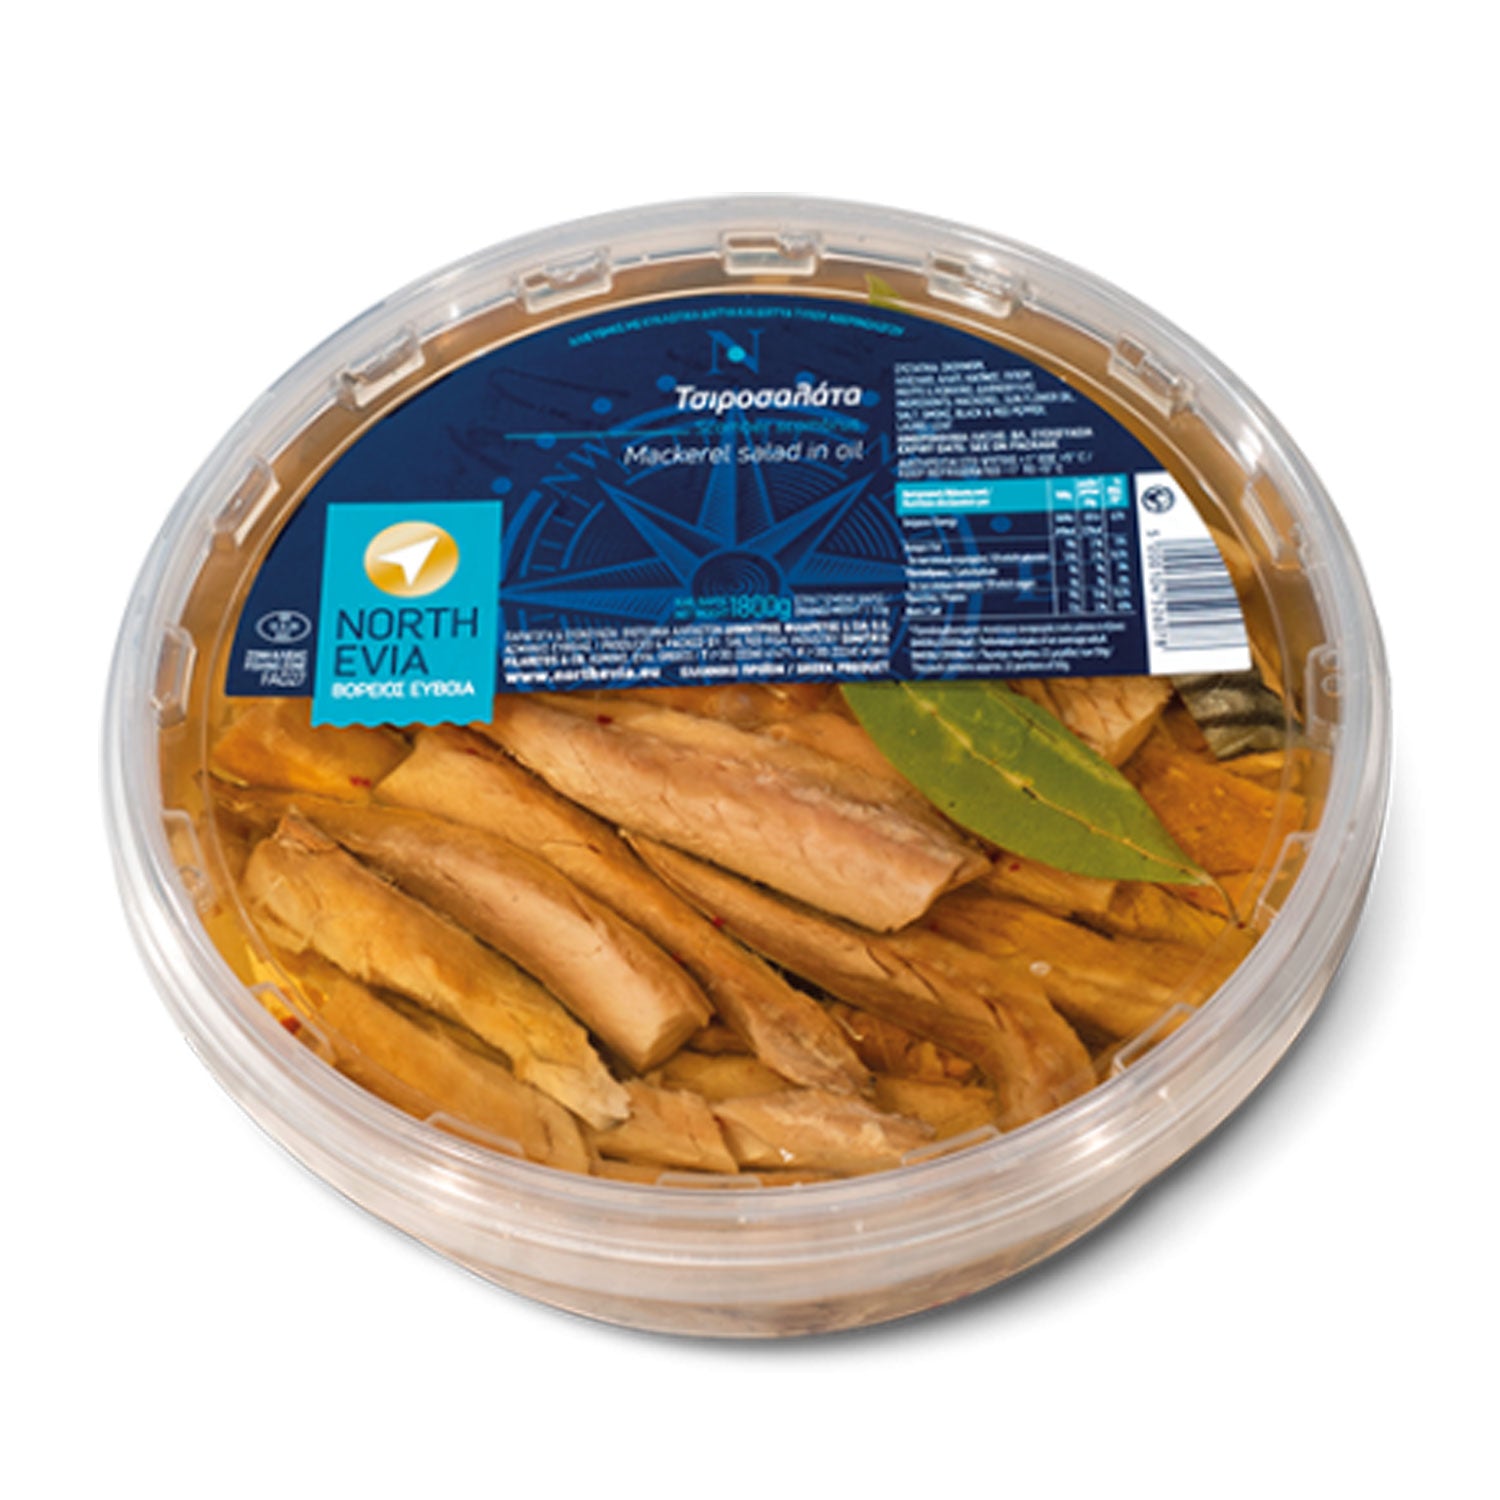 griechische-produkte-makrelensalat-aus-euboa-2kg